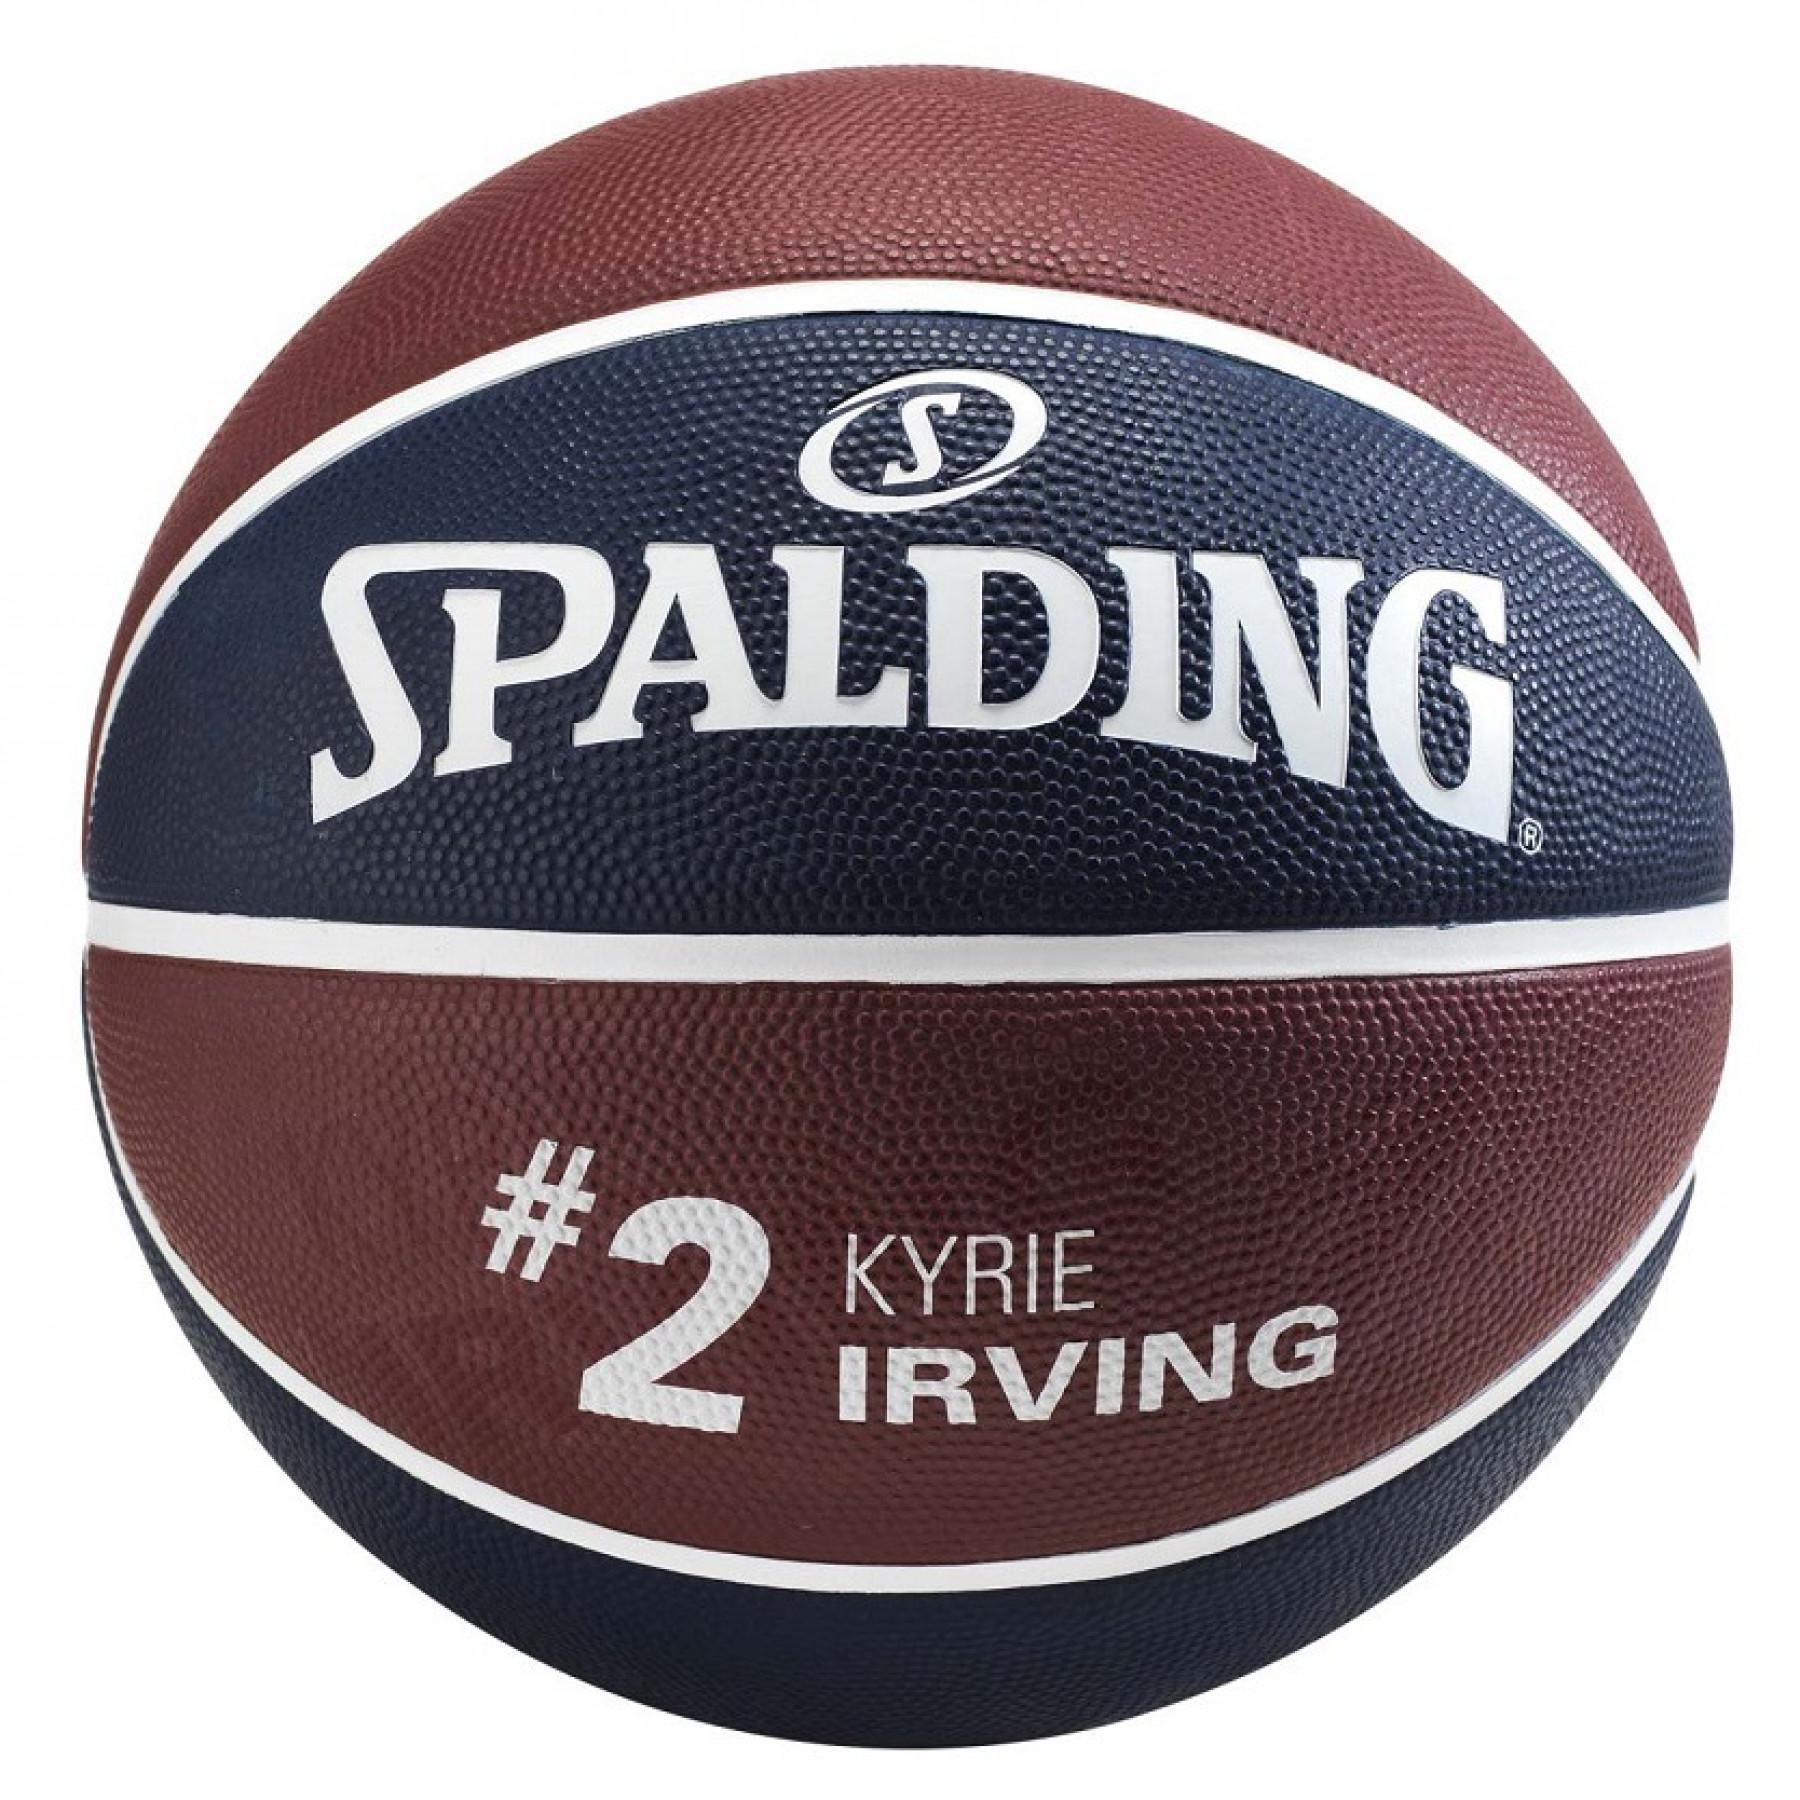 Balloon Spalding NBA player ball Kyrie Irving